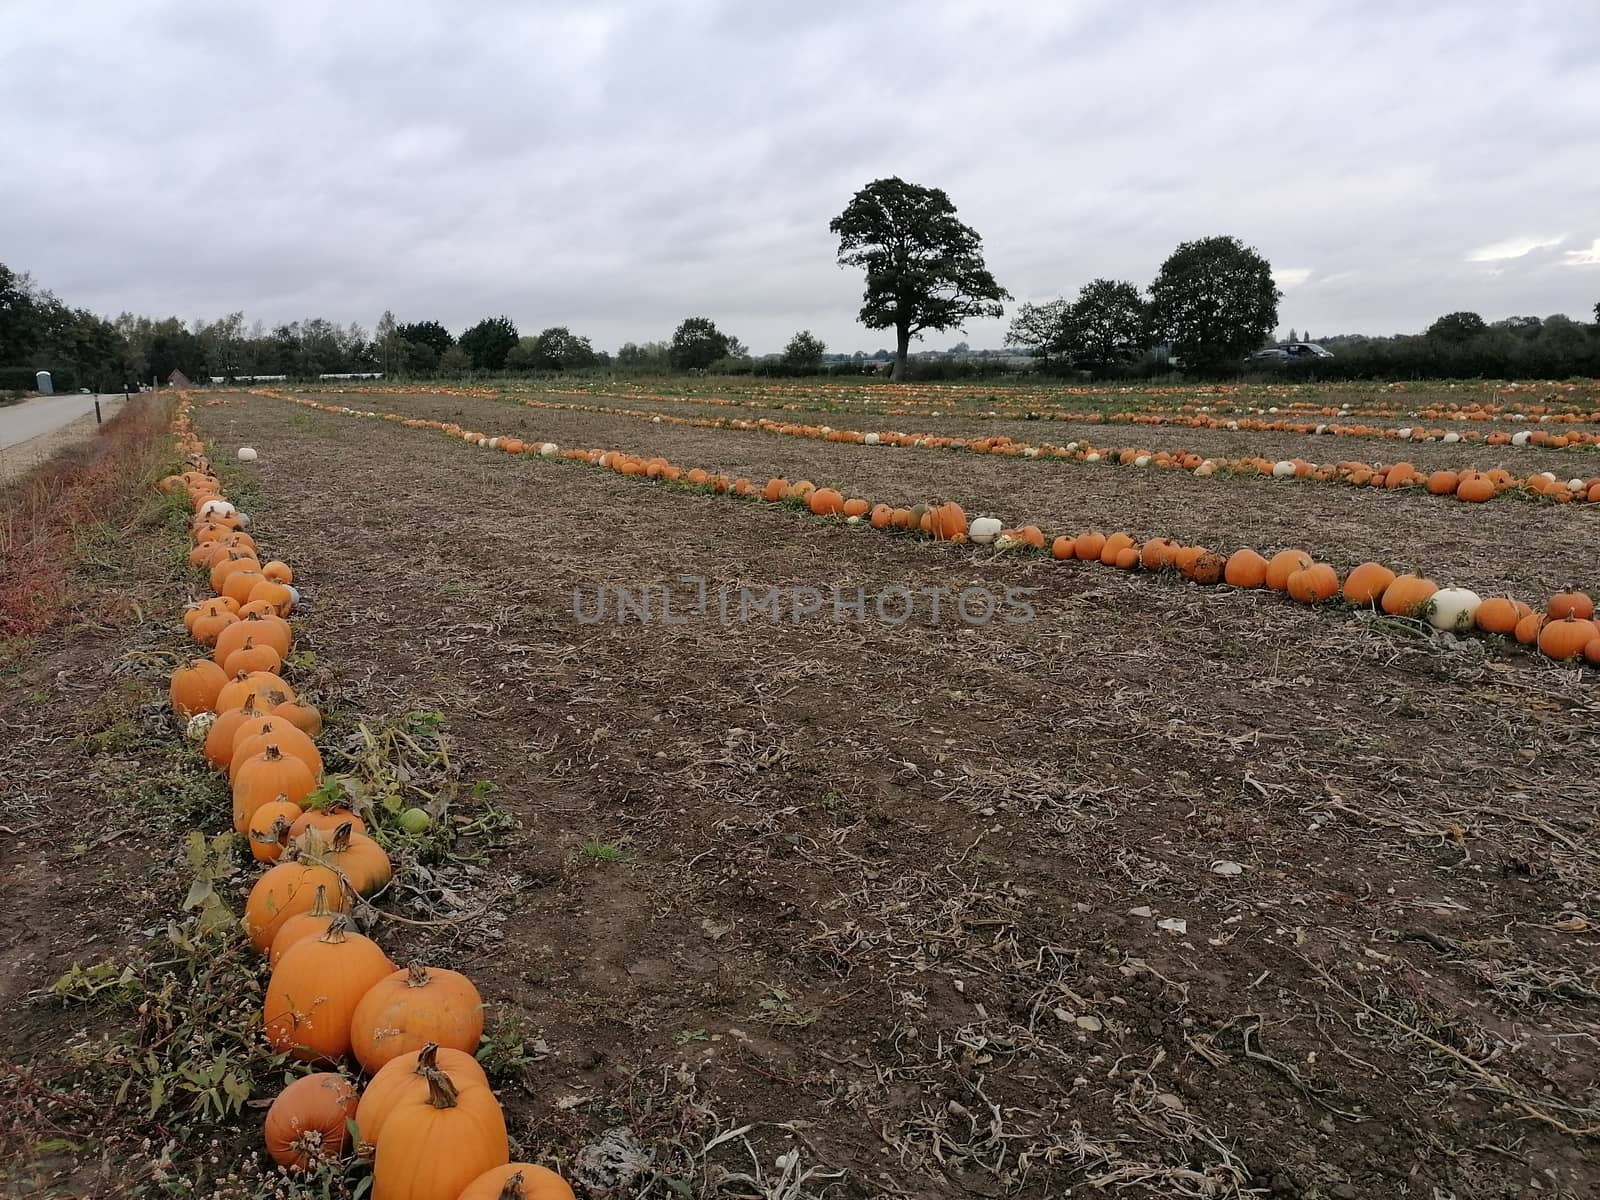 Big orange pumpkin growing in a field in norfolk uk ready for halloween